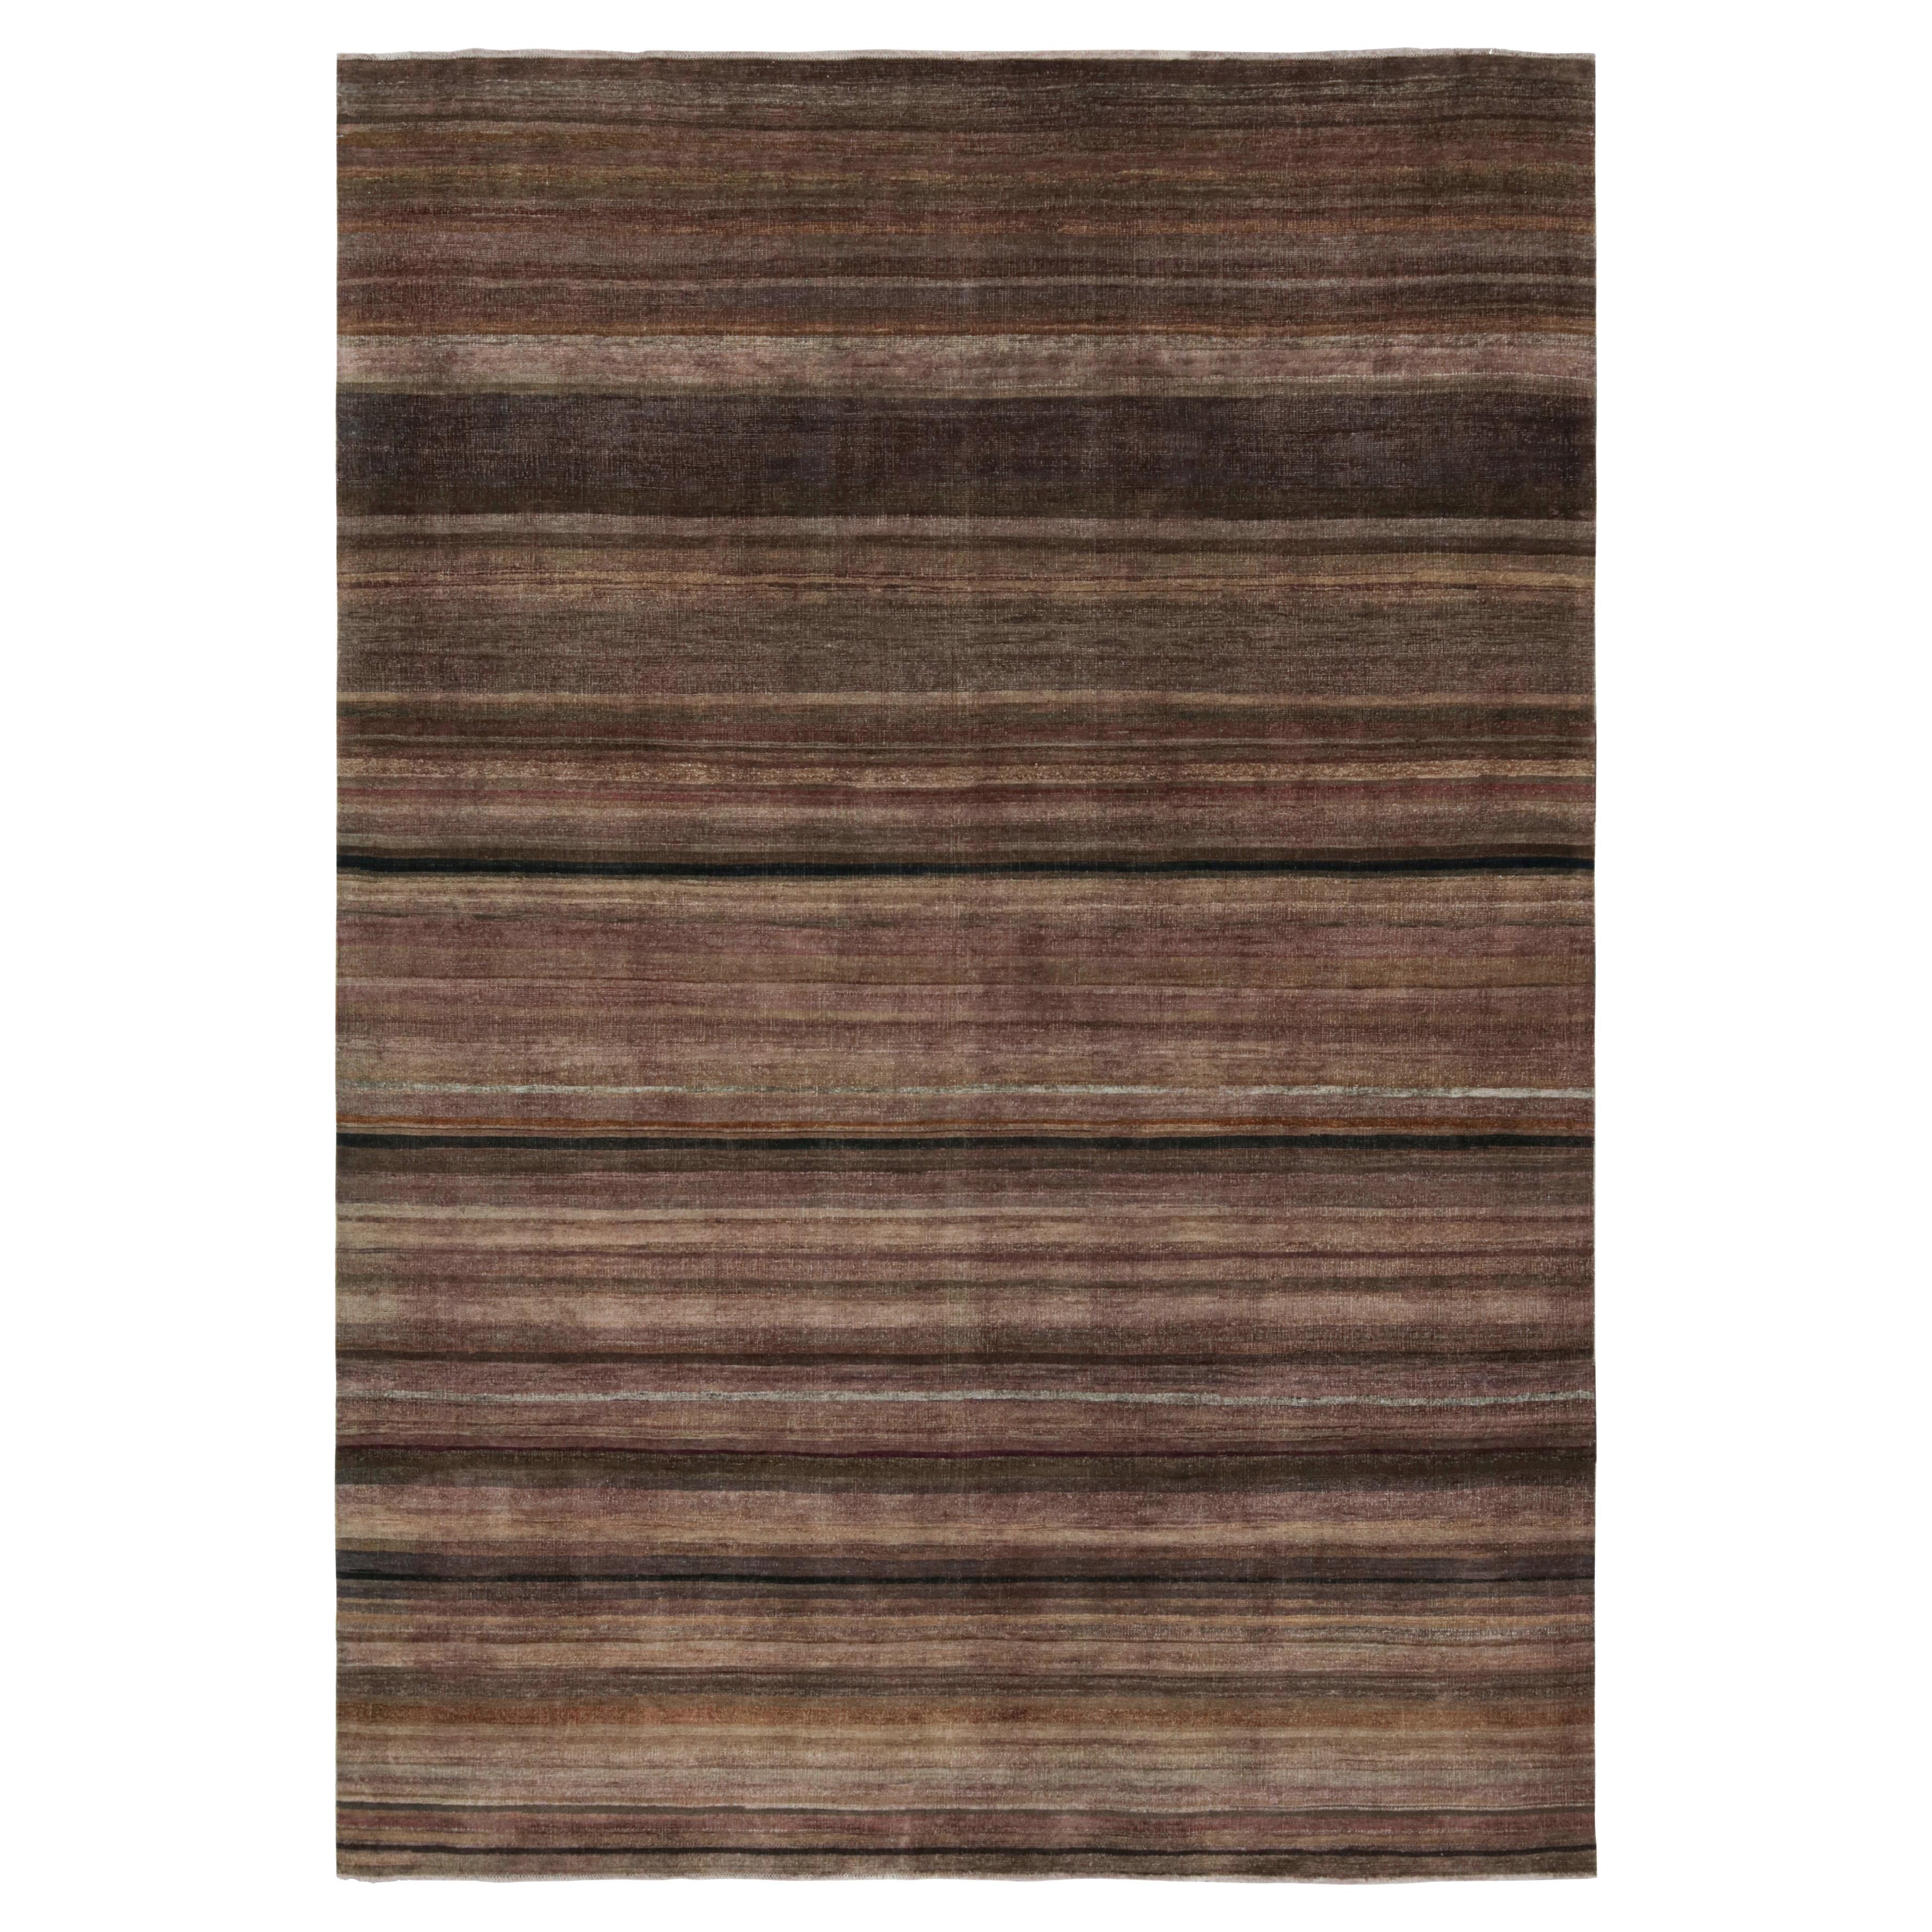 Ce tapis texturé 10x14 est un nouvel ajout à la Collection Texture of Color de Rug & Kilim.

Sur le Design :

Réalisé en laine nouée à la main, ce tapis reflète une nouvelle approche du thème de cette collection, notamment une teinture végétale